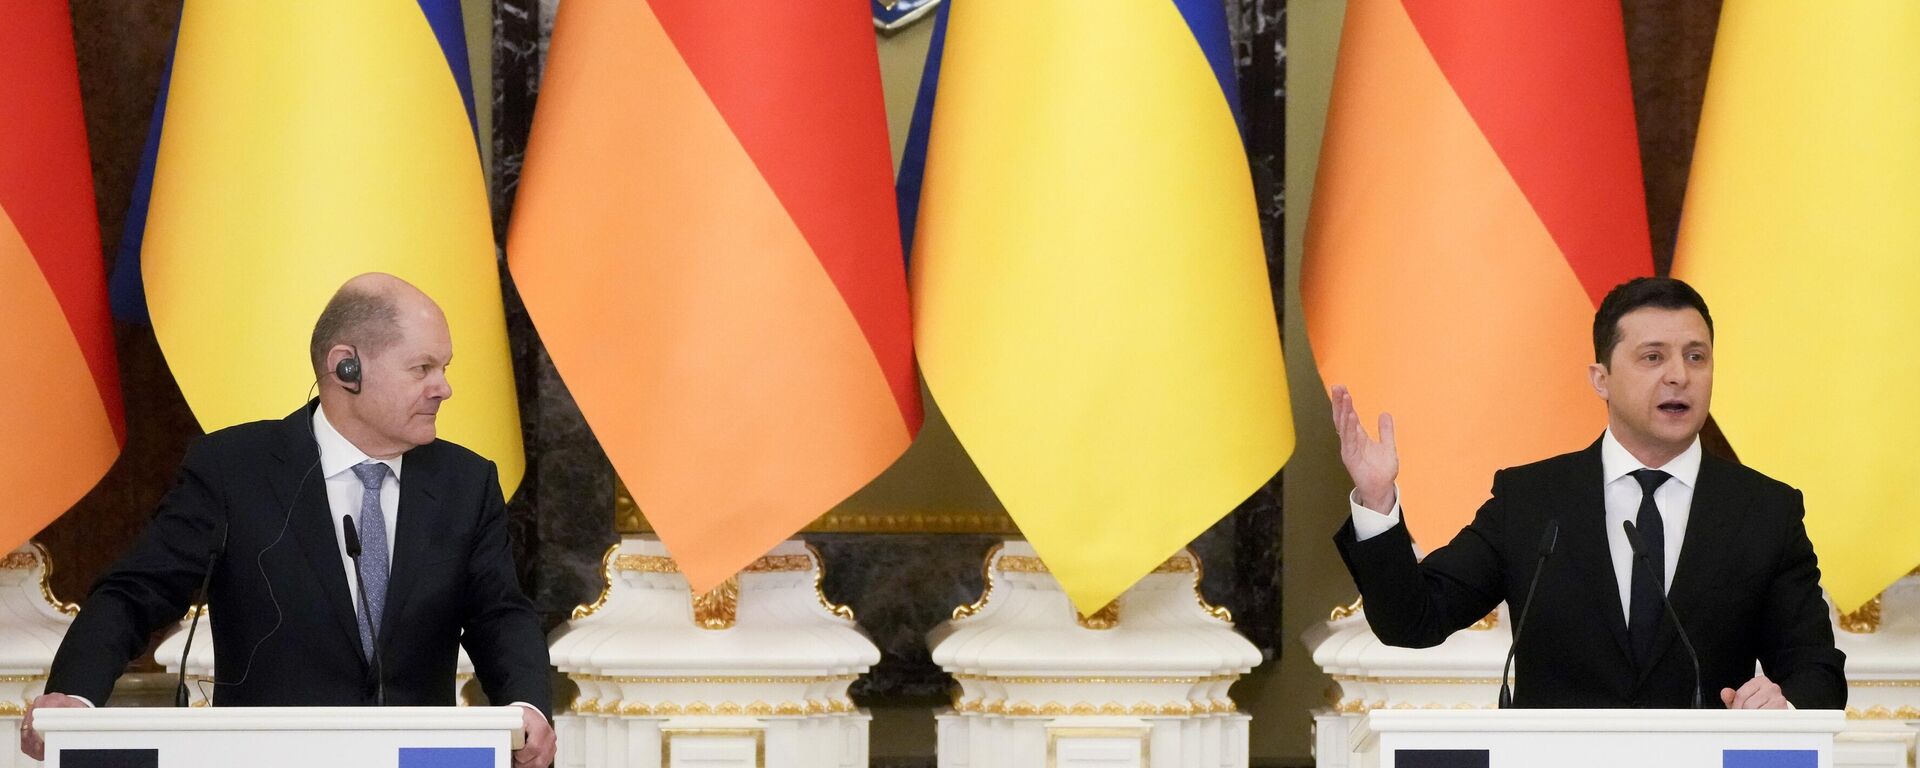 Chanceler alemão, Olaf Scholz, e o presidente da Ucrânia, Vladimir Zelensky, durante coletiva de imprensa em Kiev, 14 de fevereiro de 2022 - Sputnik Brasil, 1920, 14.06.2022